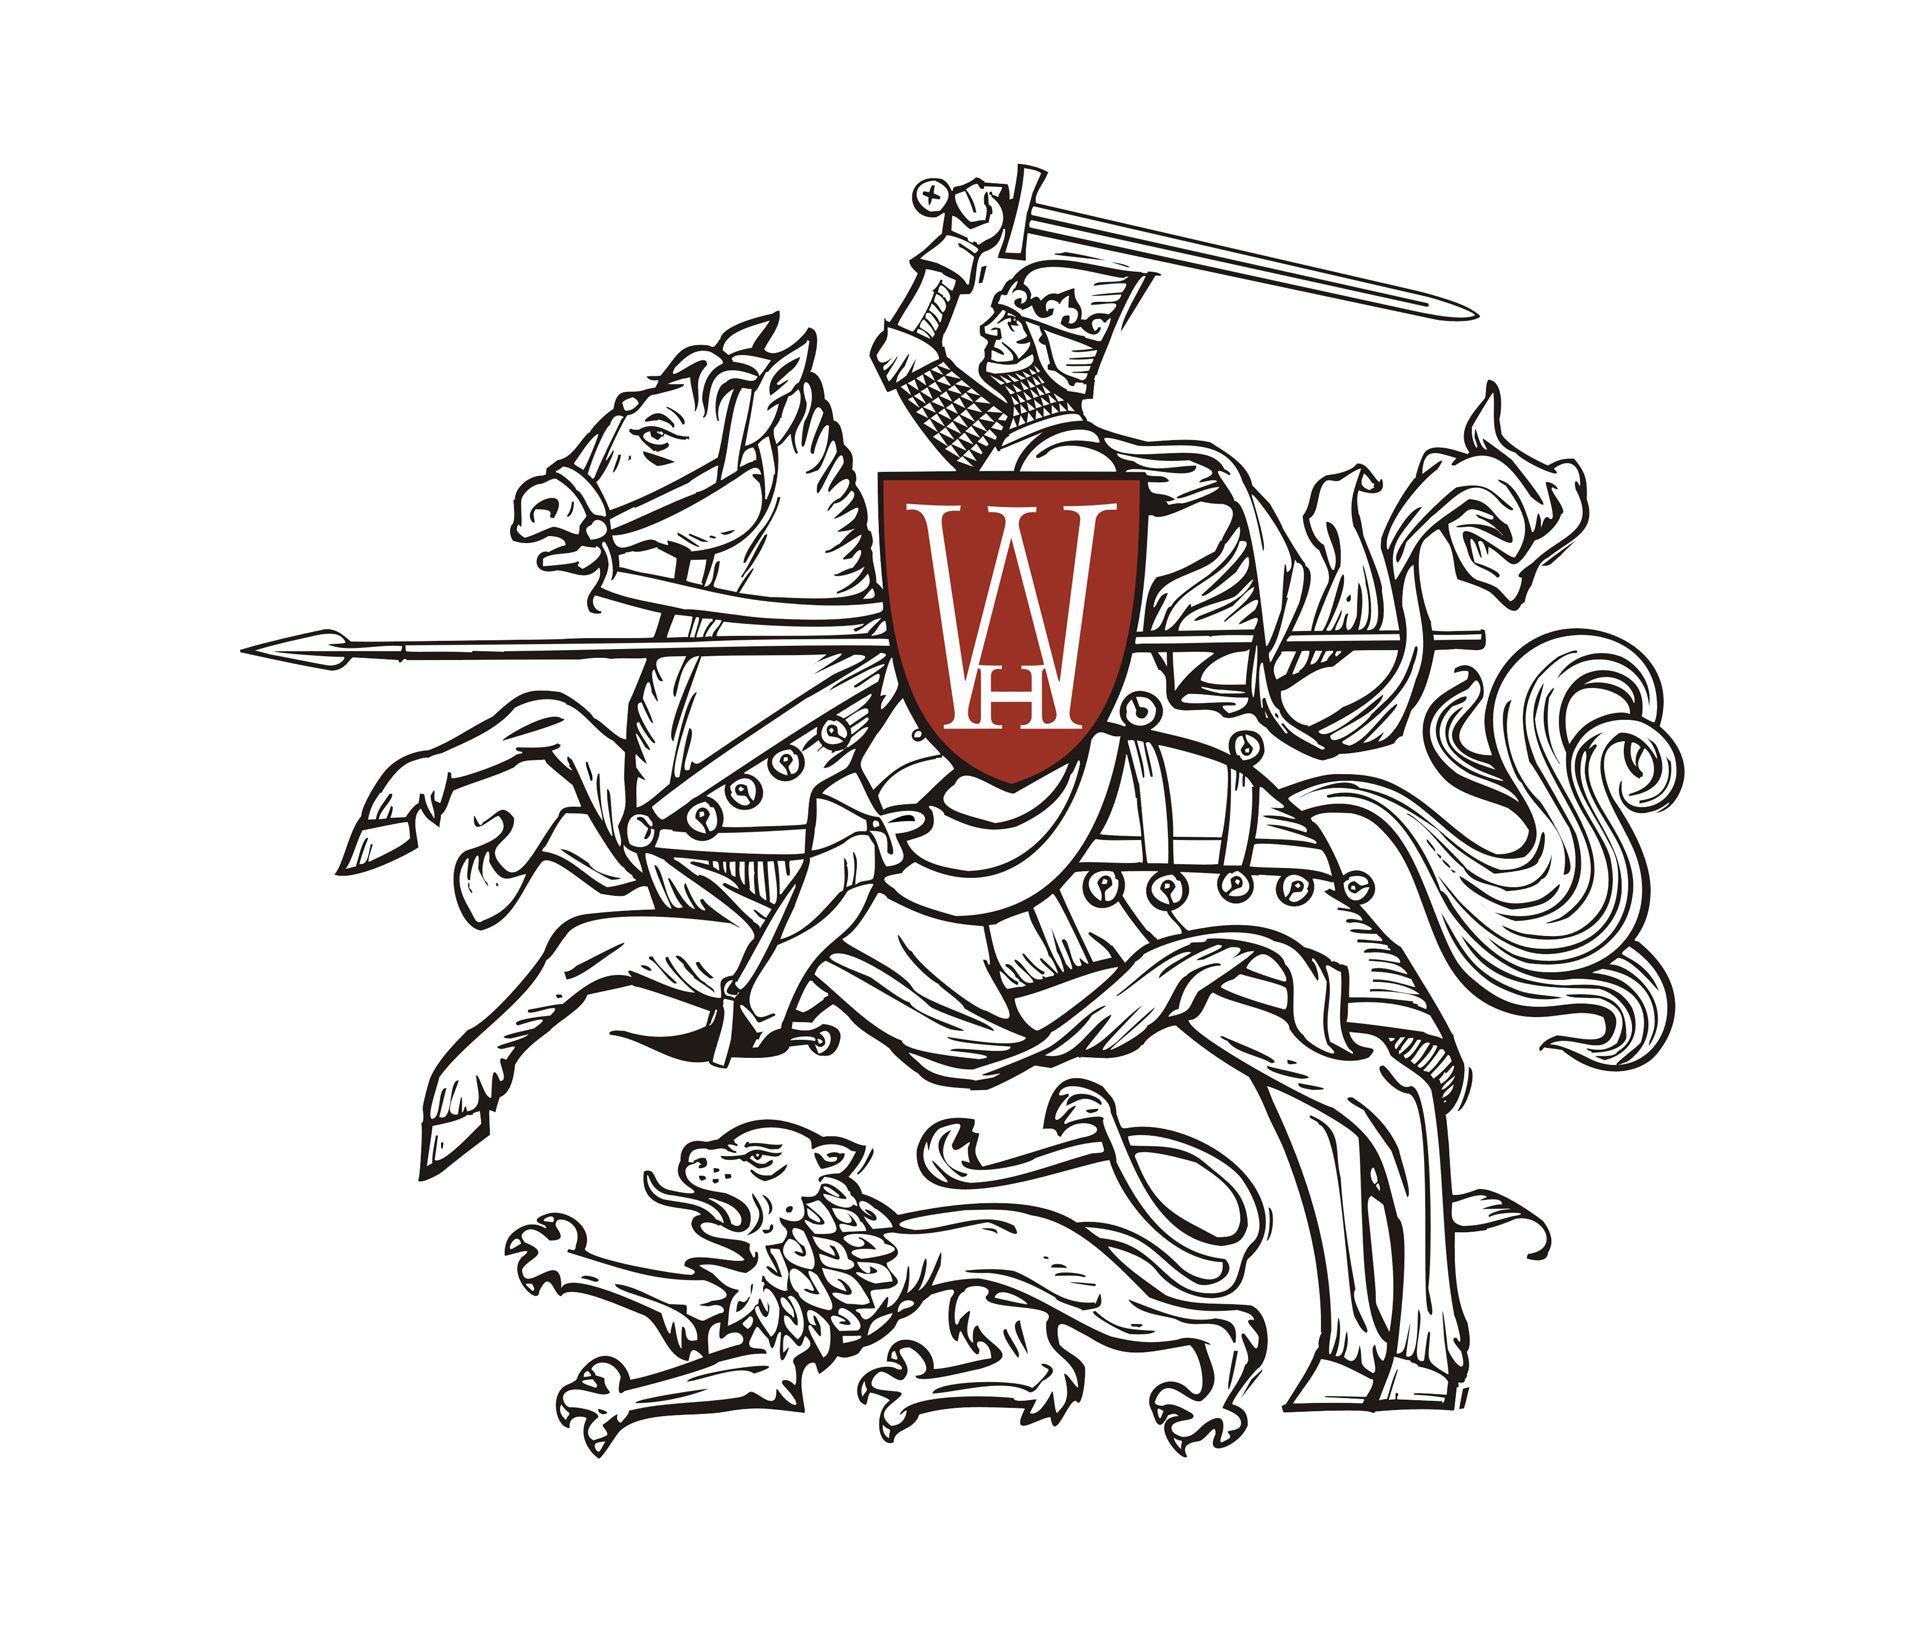 War Horse Logo - Home Studios Studios Press